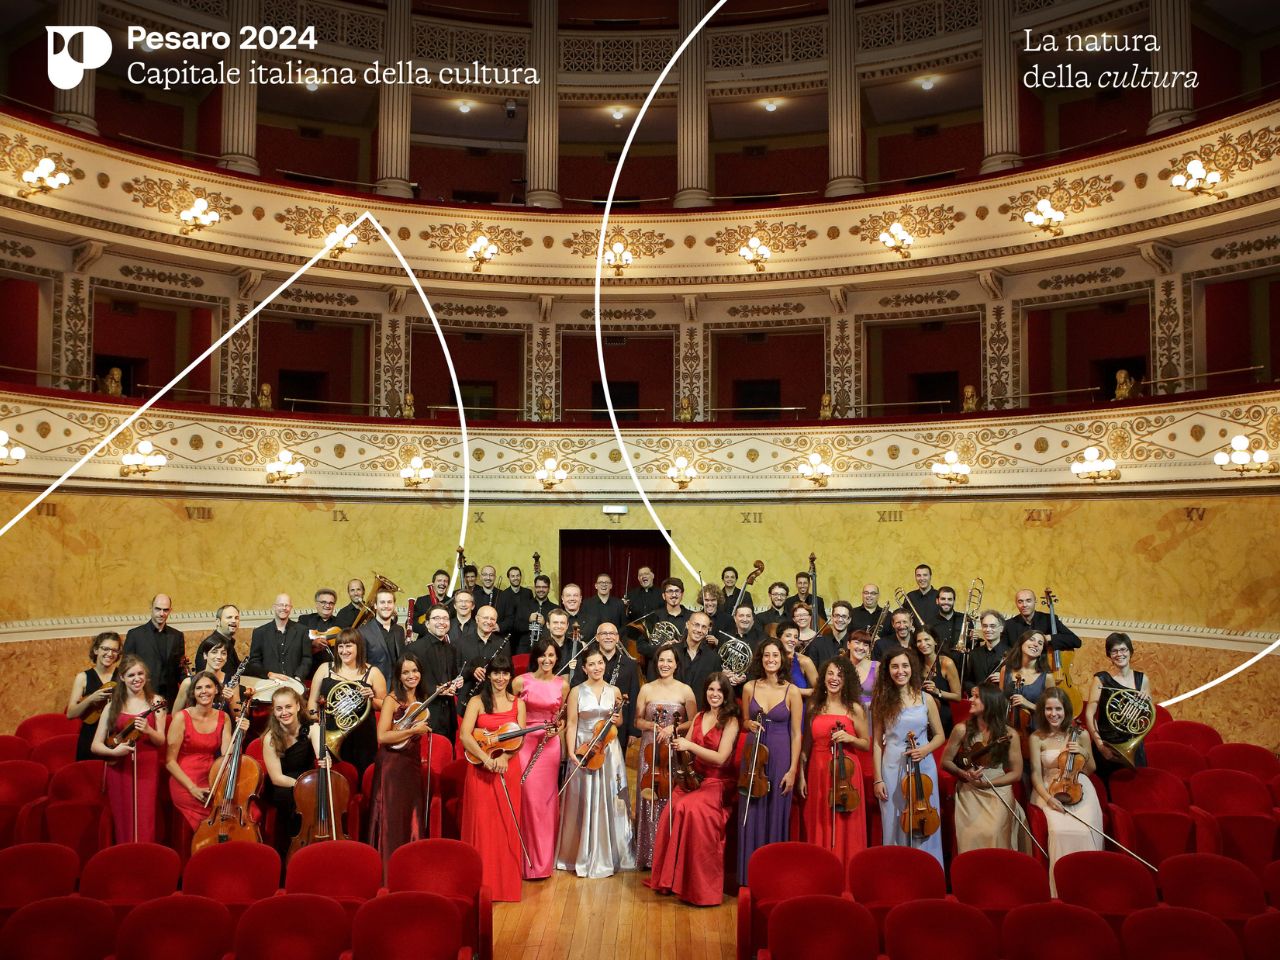 Il Teatro Rossini accende la musica delle feste con il Concerto di Natale di Pesaro 2024